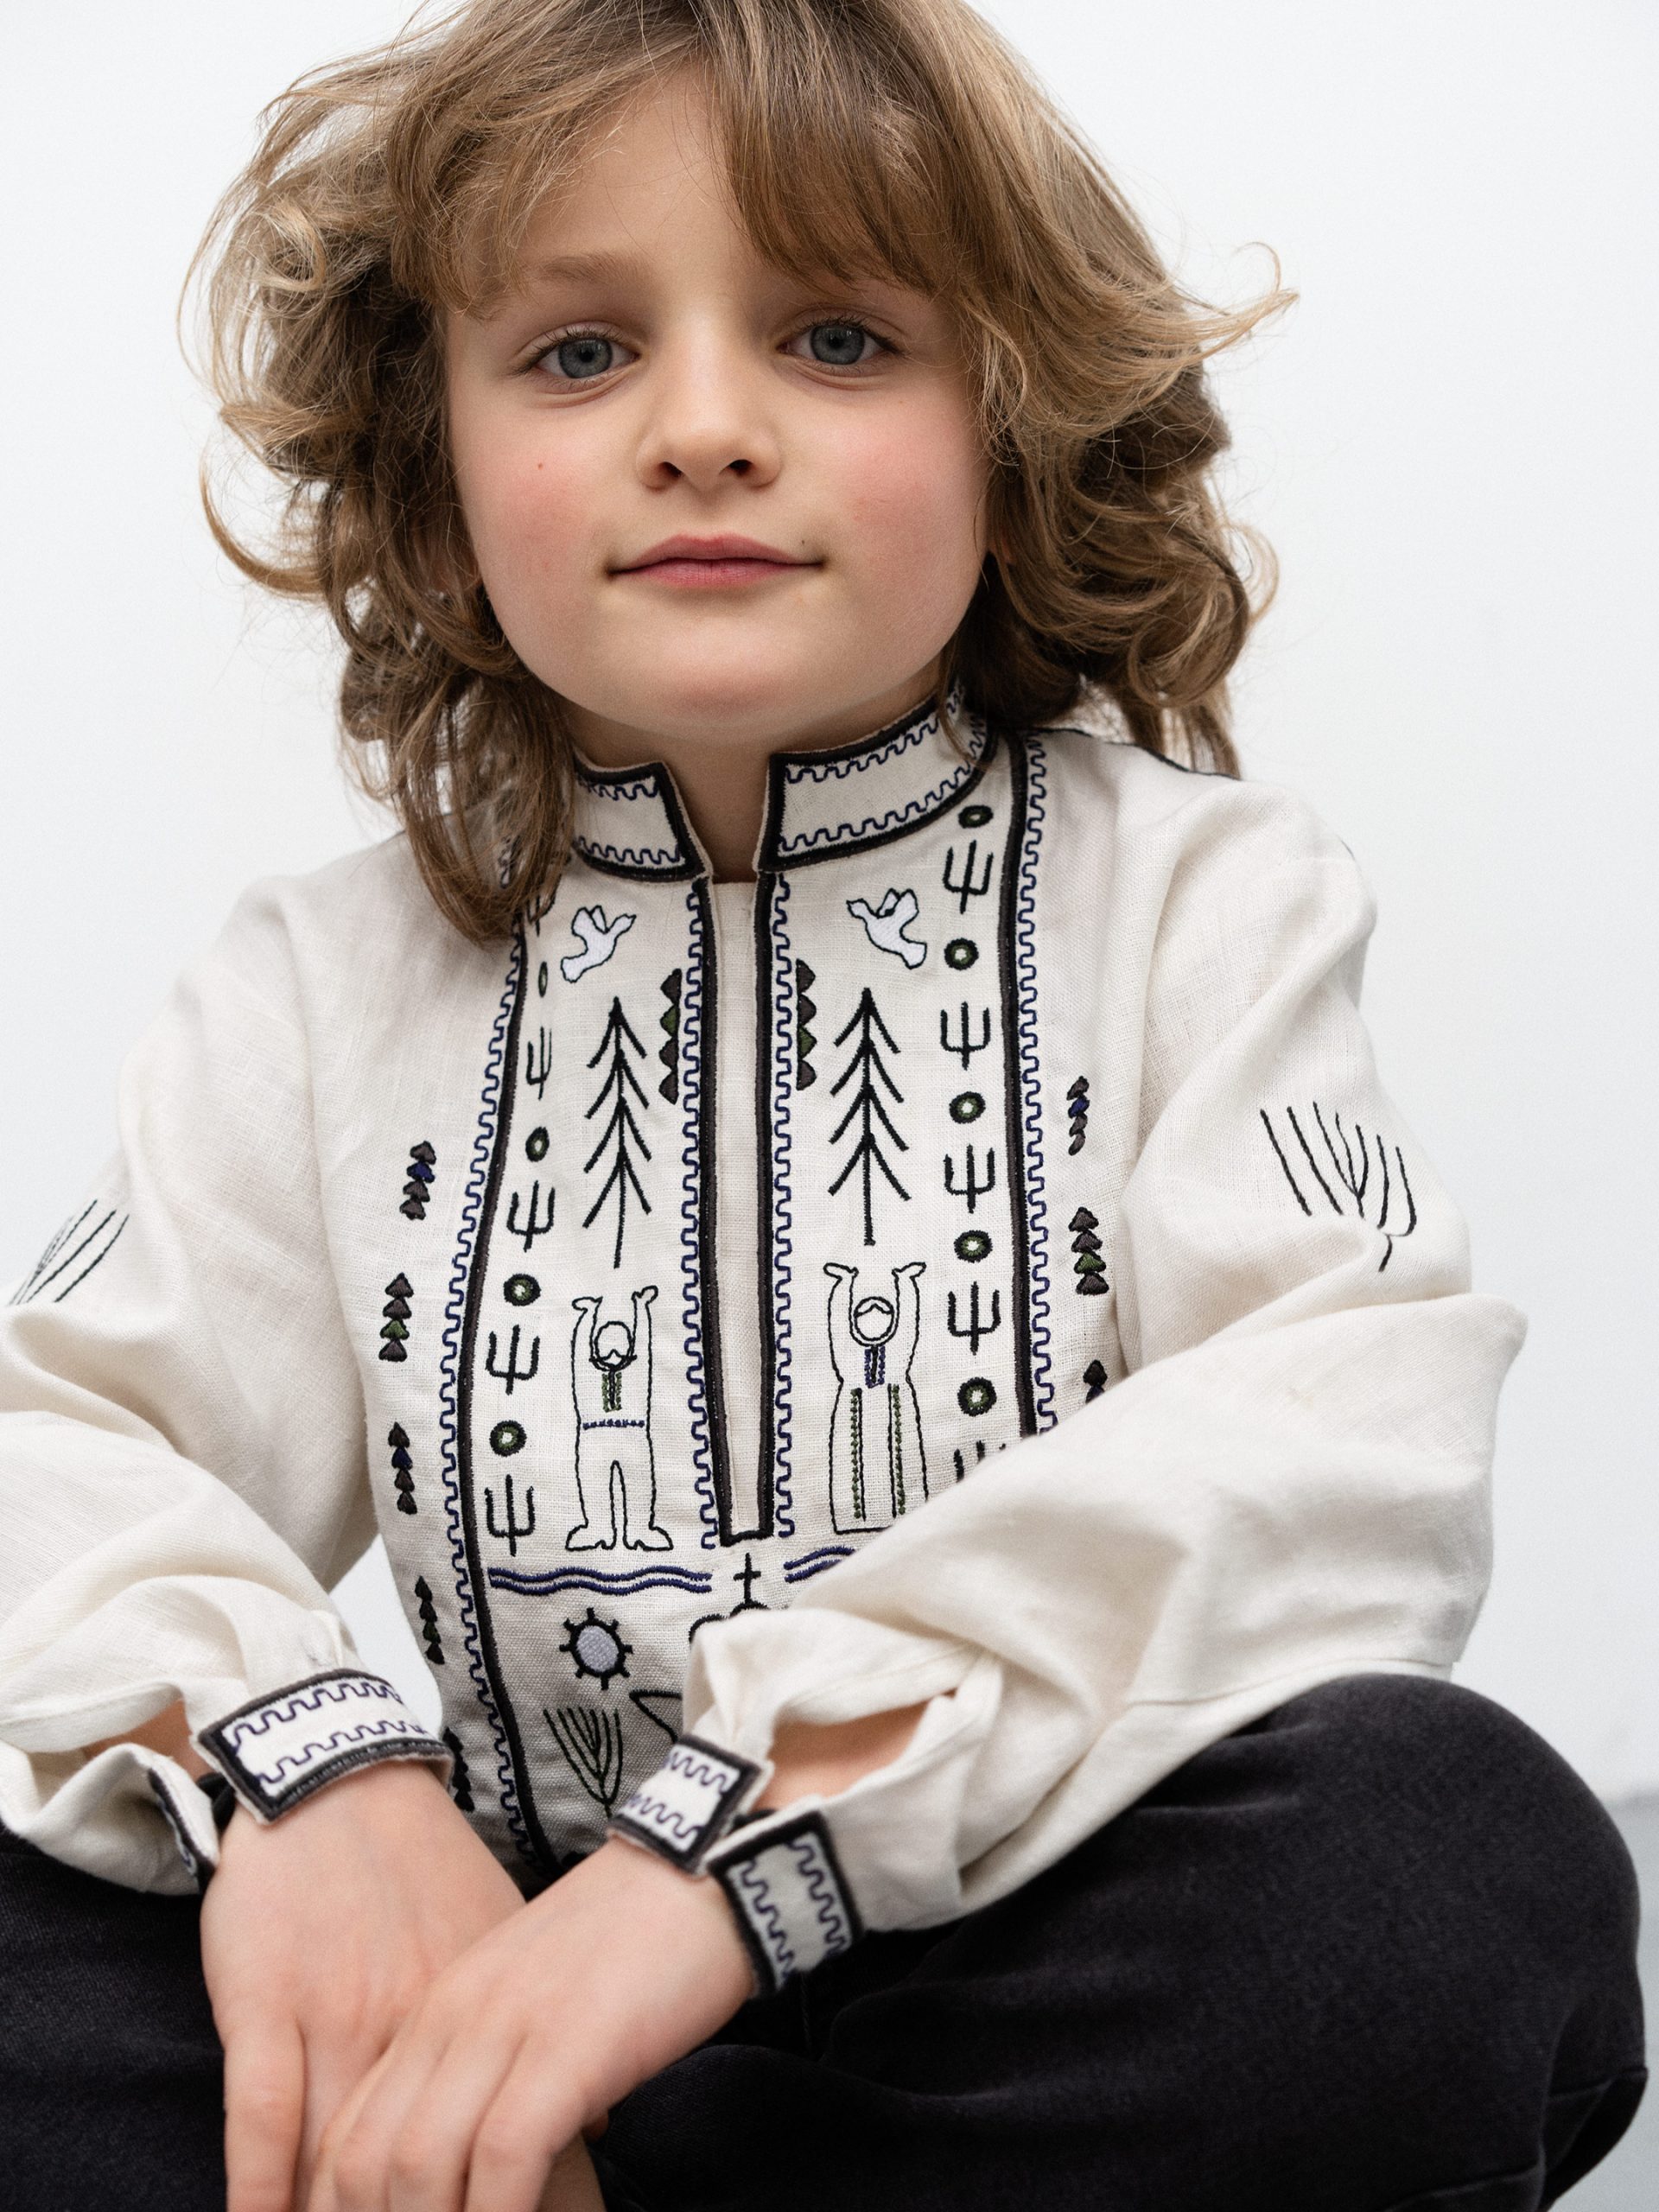 Etnodim представив дитячу колекцію вишиванок, натхненну українськими казками